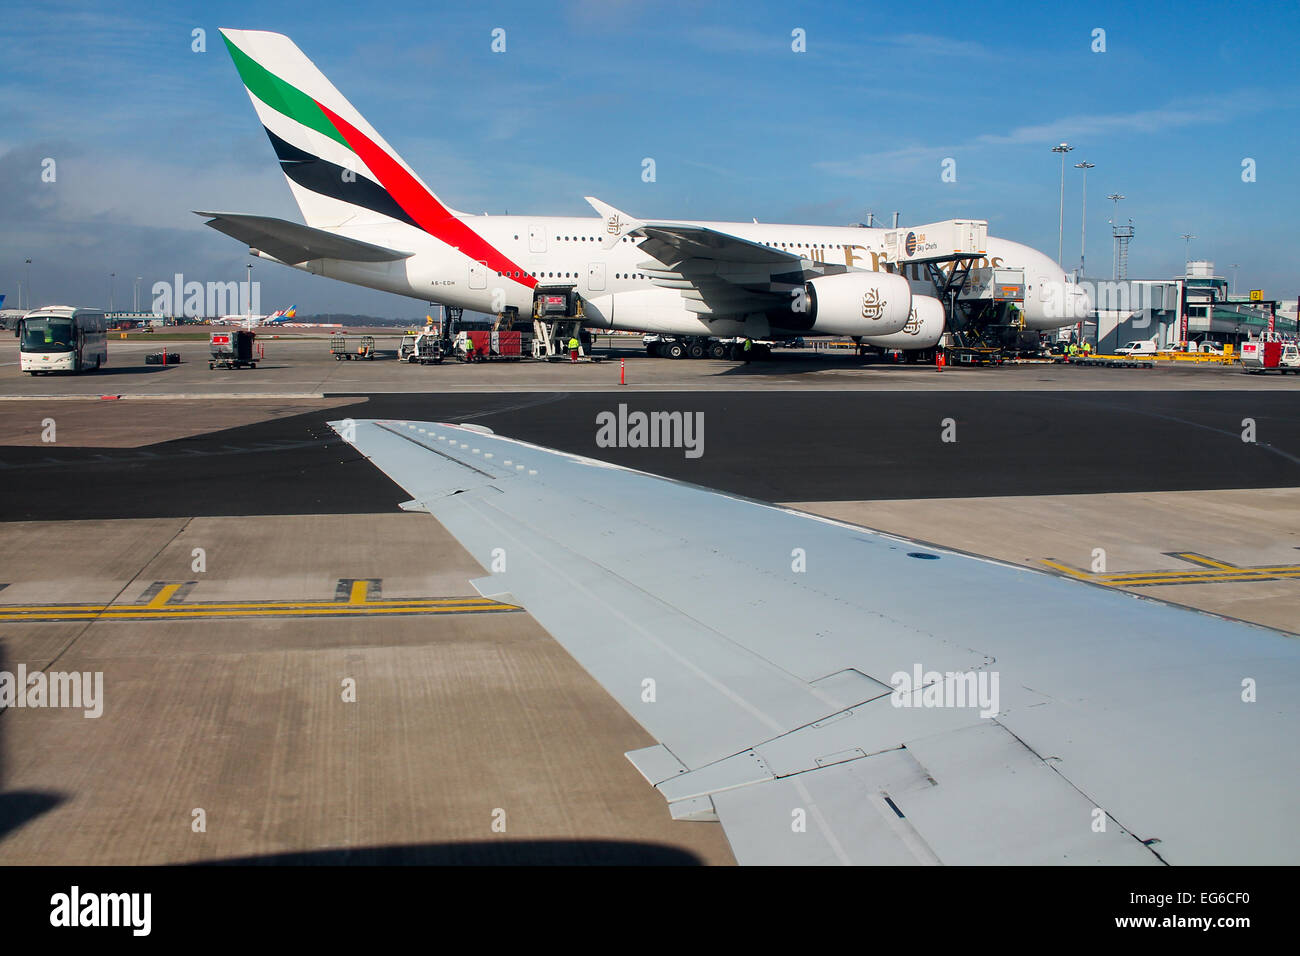 Bmi Regional Embraer 145 taxis passé un Emirates Airbus A380 à l'aéroport de Manchester. Banque D'Images